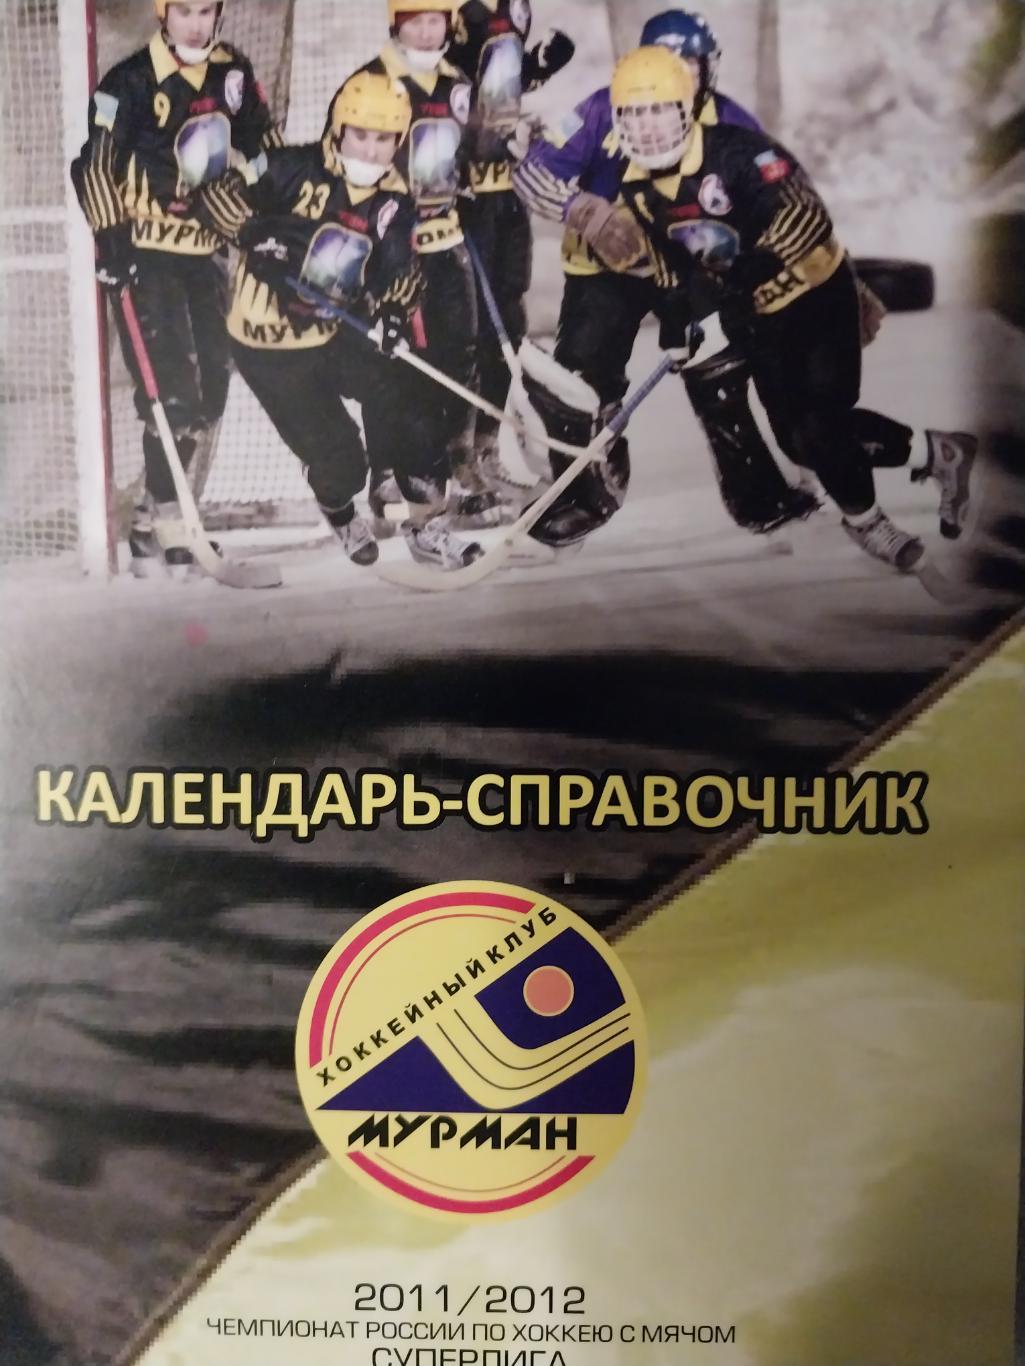 Хоккей с мячом, Мурман (Мурманск) 2011-12